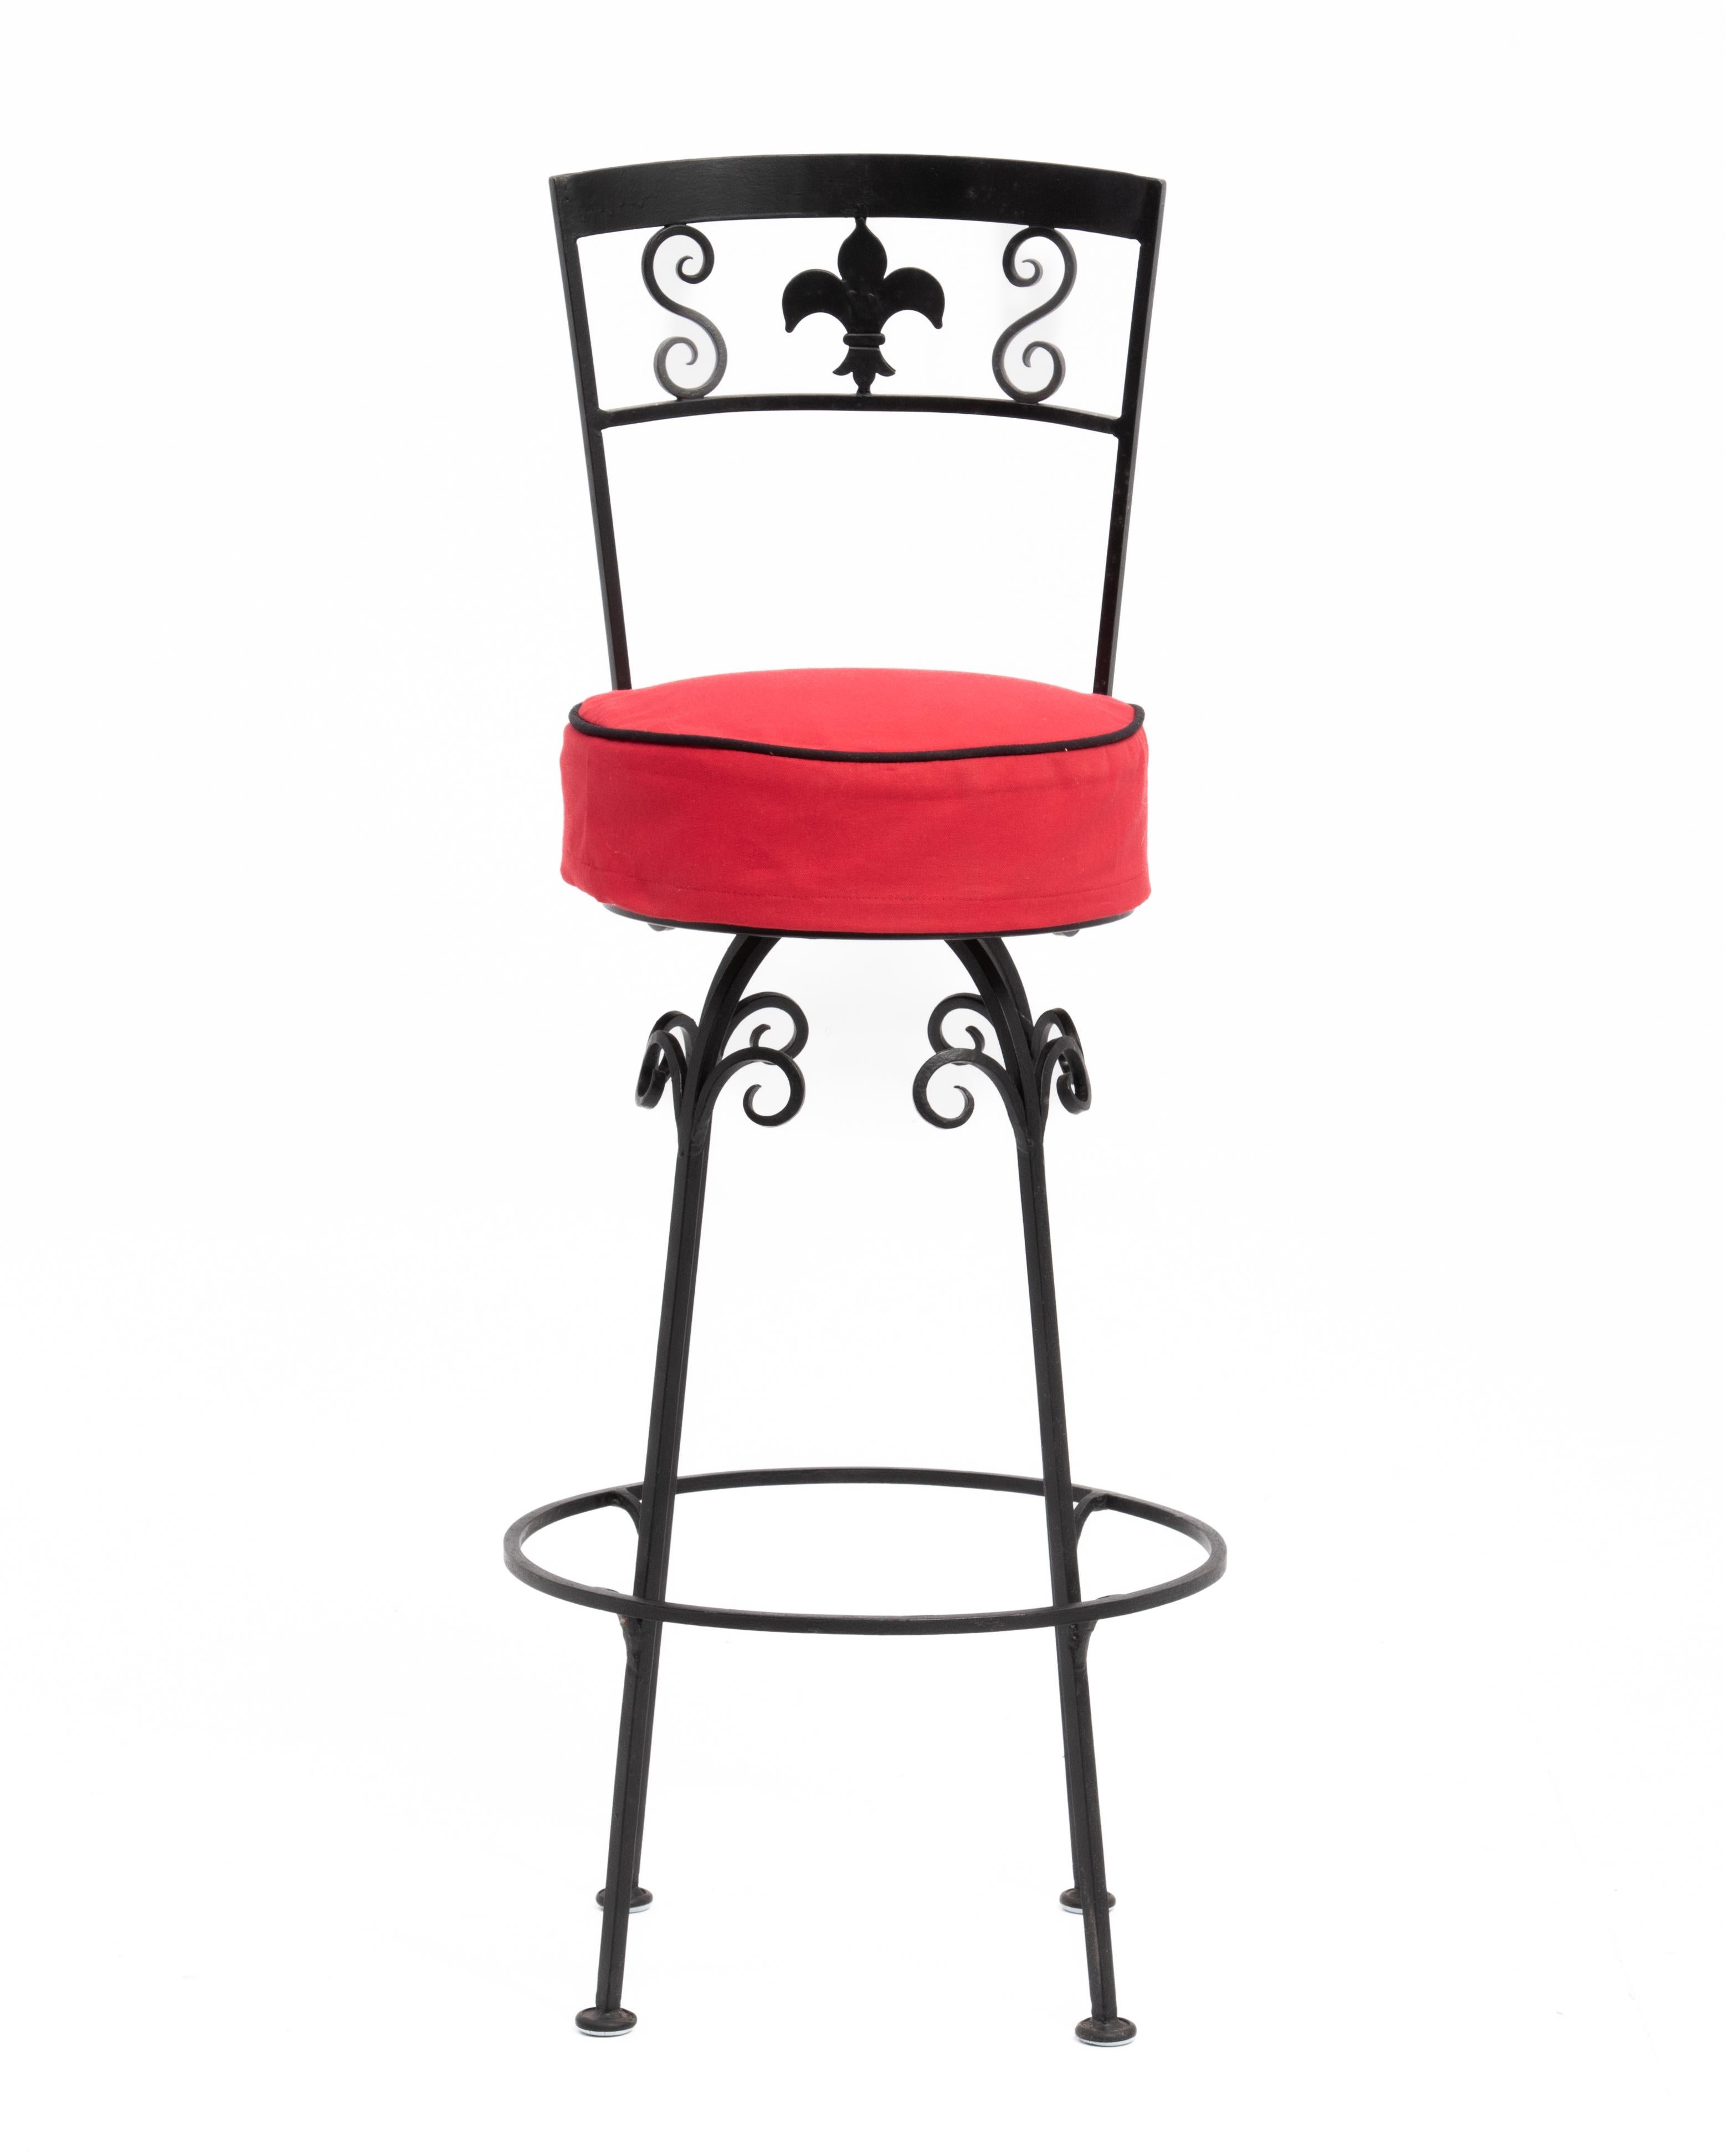 Ein stilvolles Set aus vier schmiedeeisernen Barhockern mit flour-de-lis Dekoration. Sonderanfertigung in Amerika für ein Restaurant in New York City in den 1960er Jahren. Der rote Stoff auf den Sitzen ist ein Schonbezug.
Wir haben acht von diesen